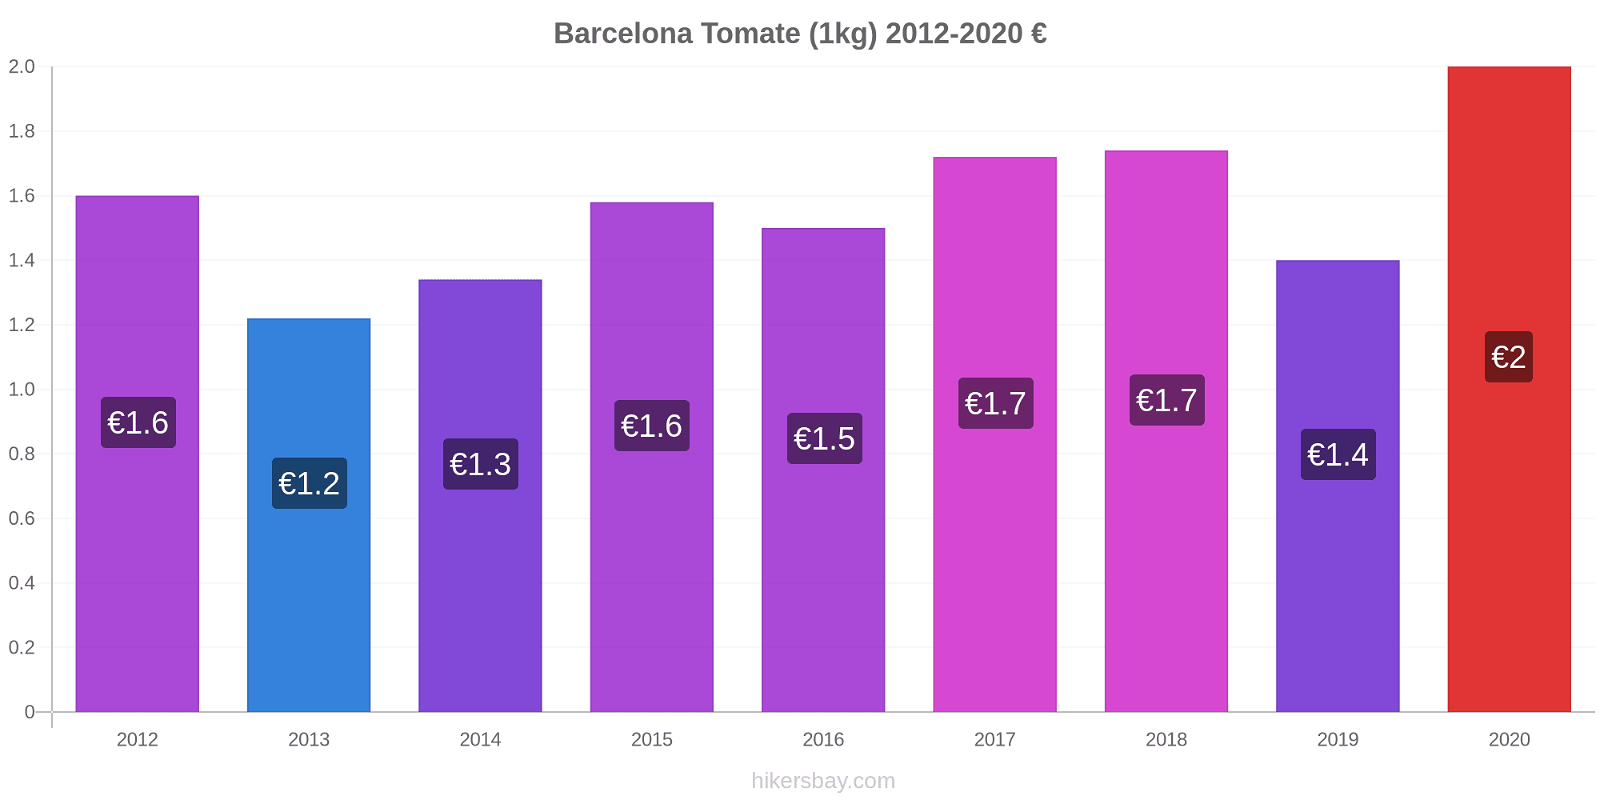 Barcelona modificări de preț Tomate (1kg) hikersbay.com